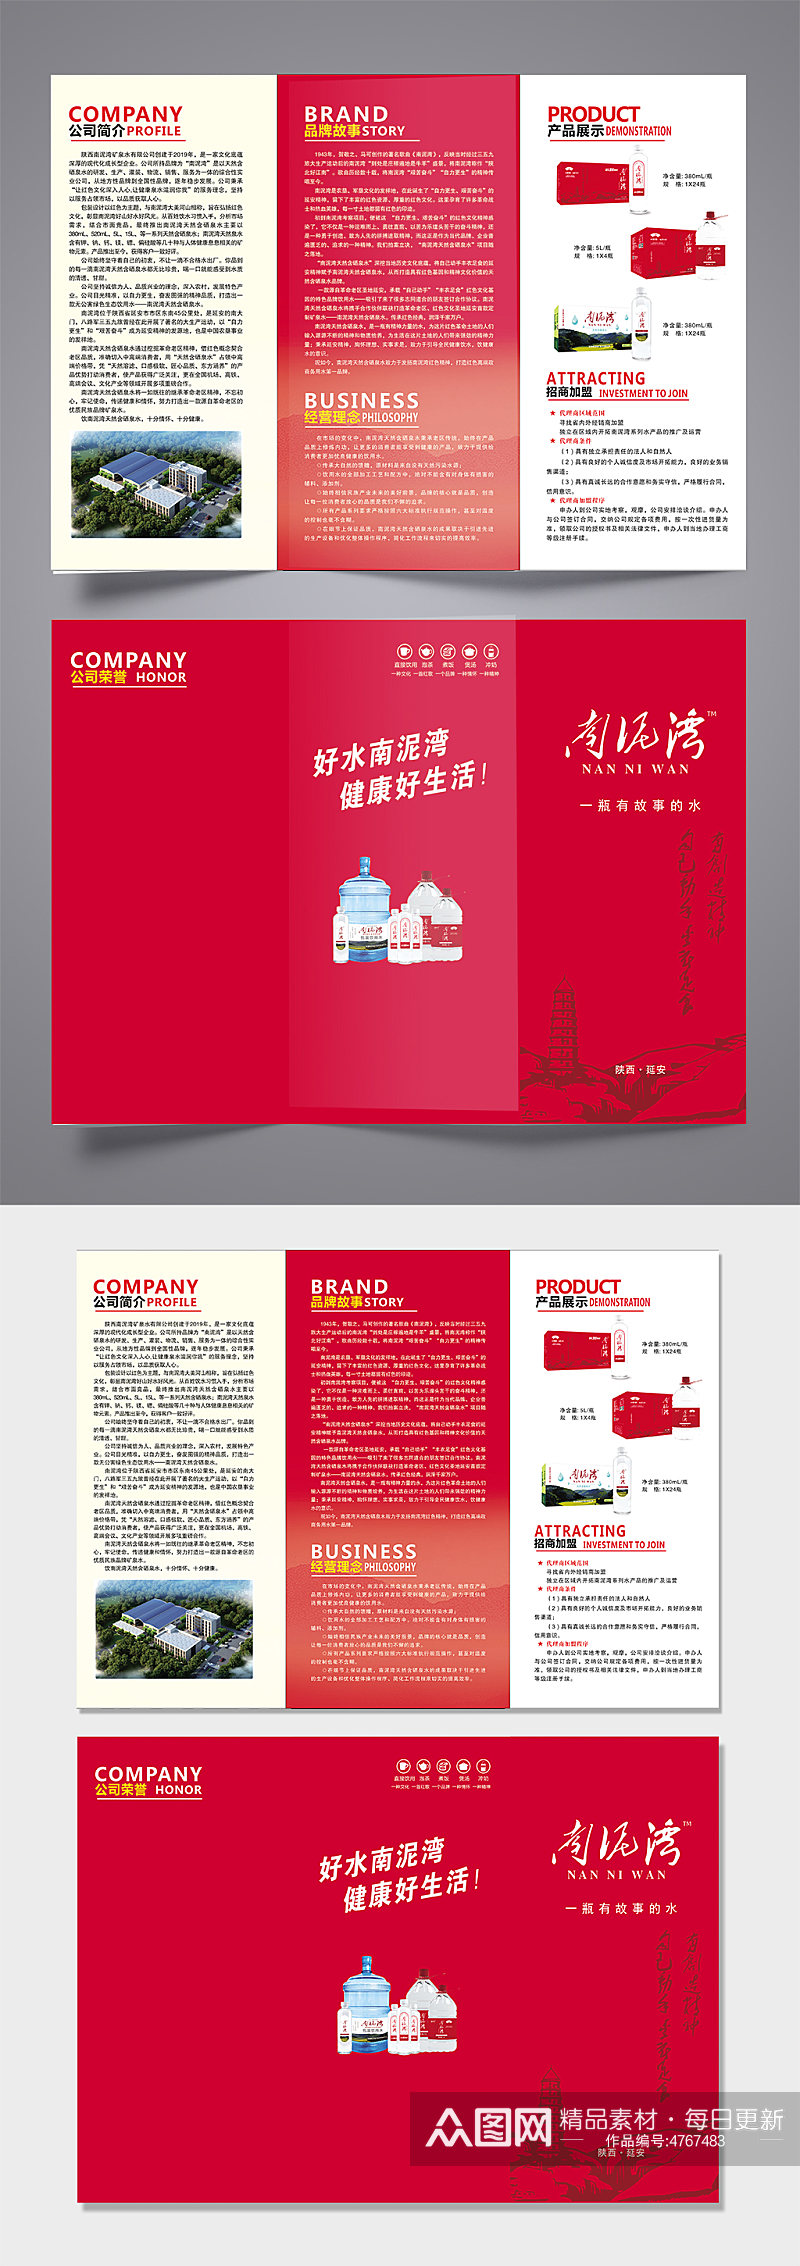 南泥湾红色中国风简约折页素材